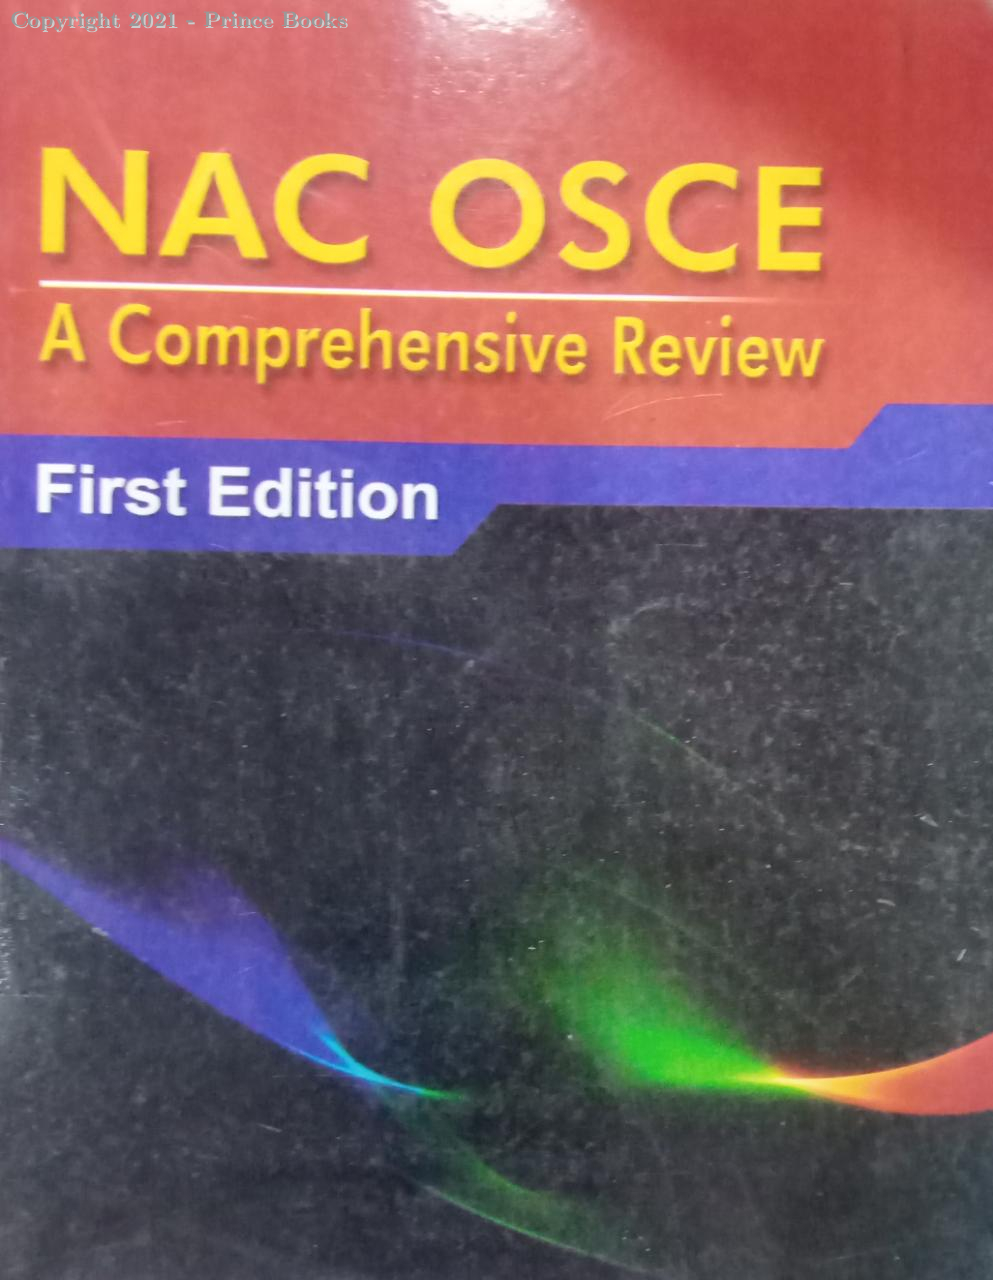 nac osce a comprehensive review, 1e